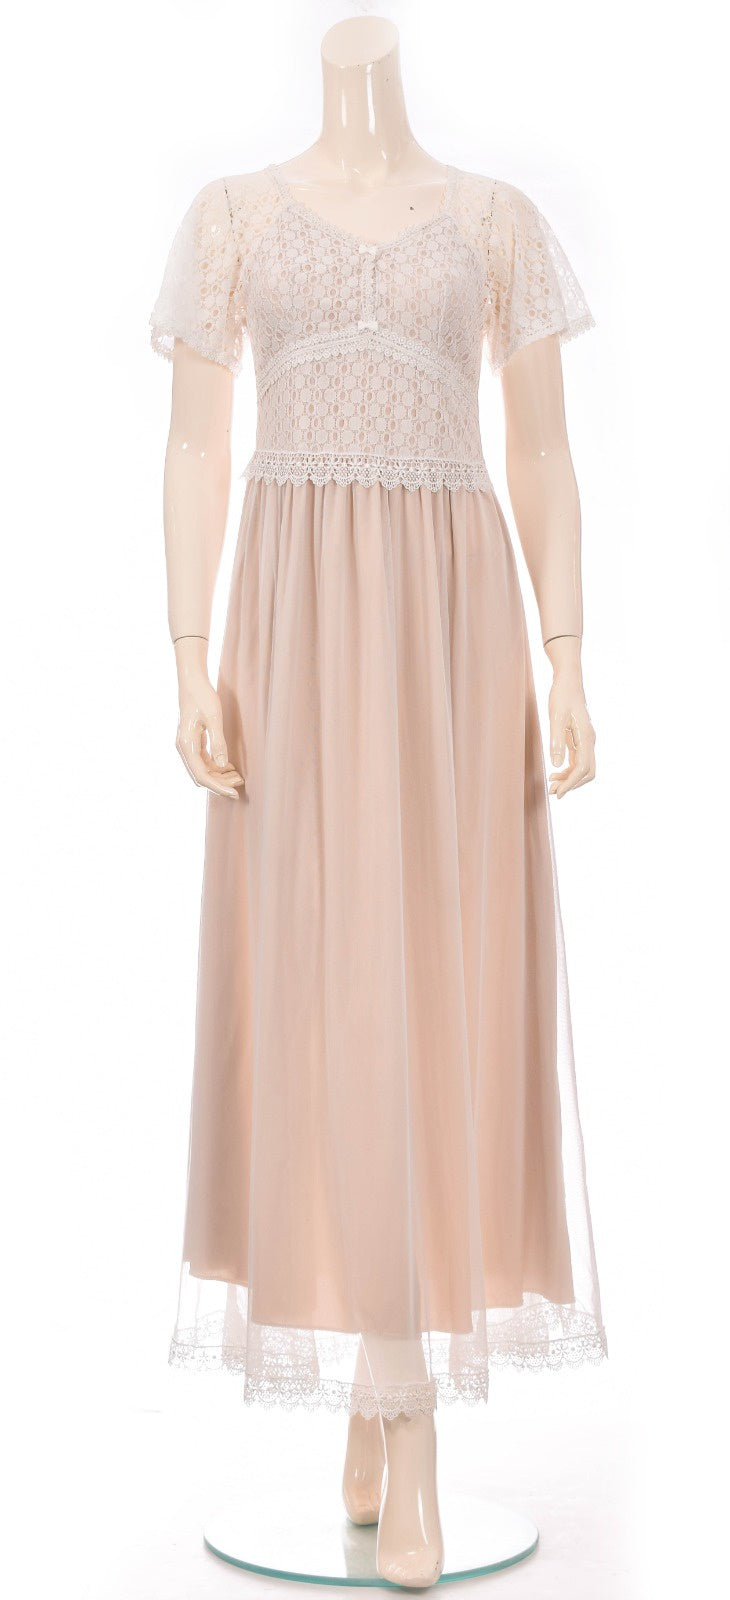 Royal Lace & Chiffon Night Dress - Beige Dress Coco Box 